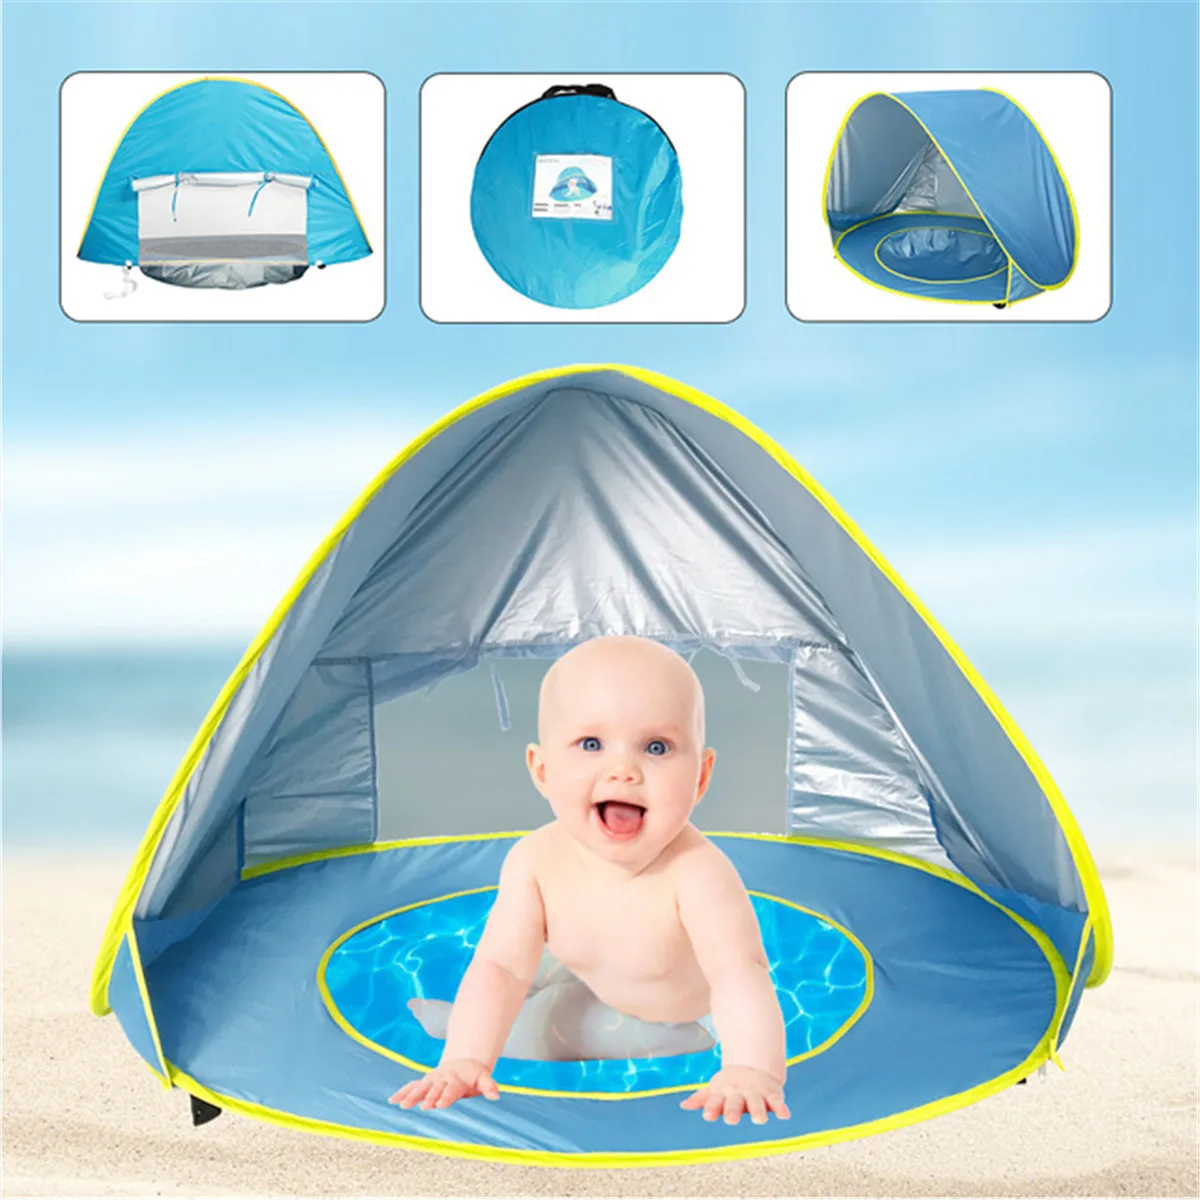 Tente de plage Portable pour bébé | Protection contre les UV, pare-soleil, imperméable, tente de plage extérieure, abri solaire automatique pour enfants en bas âge